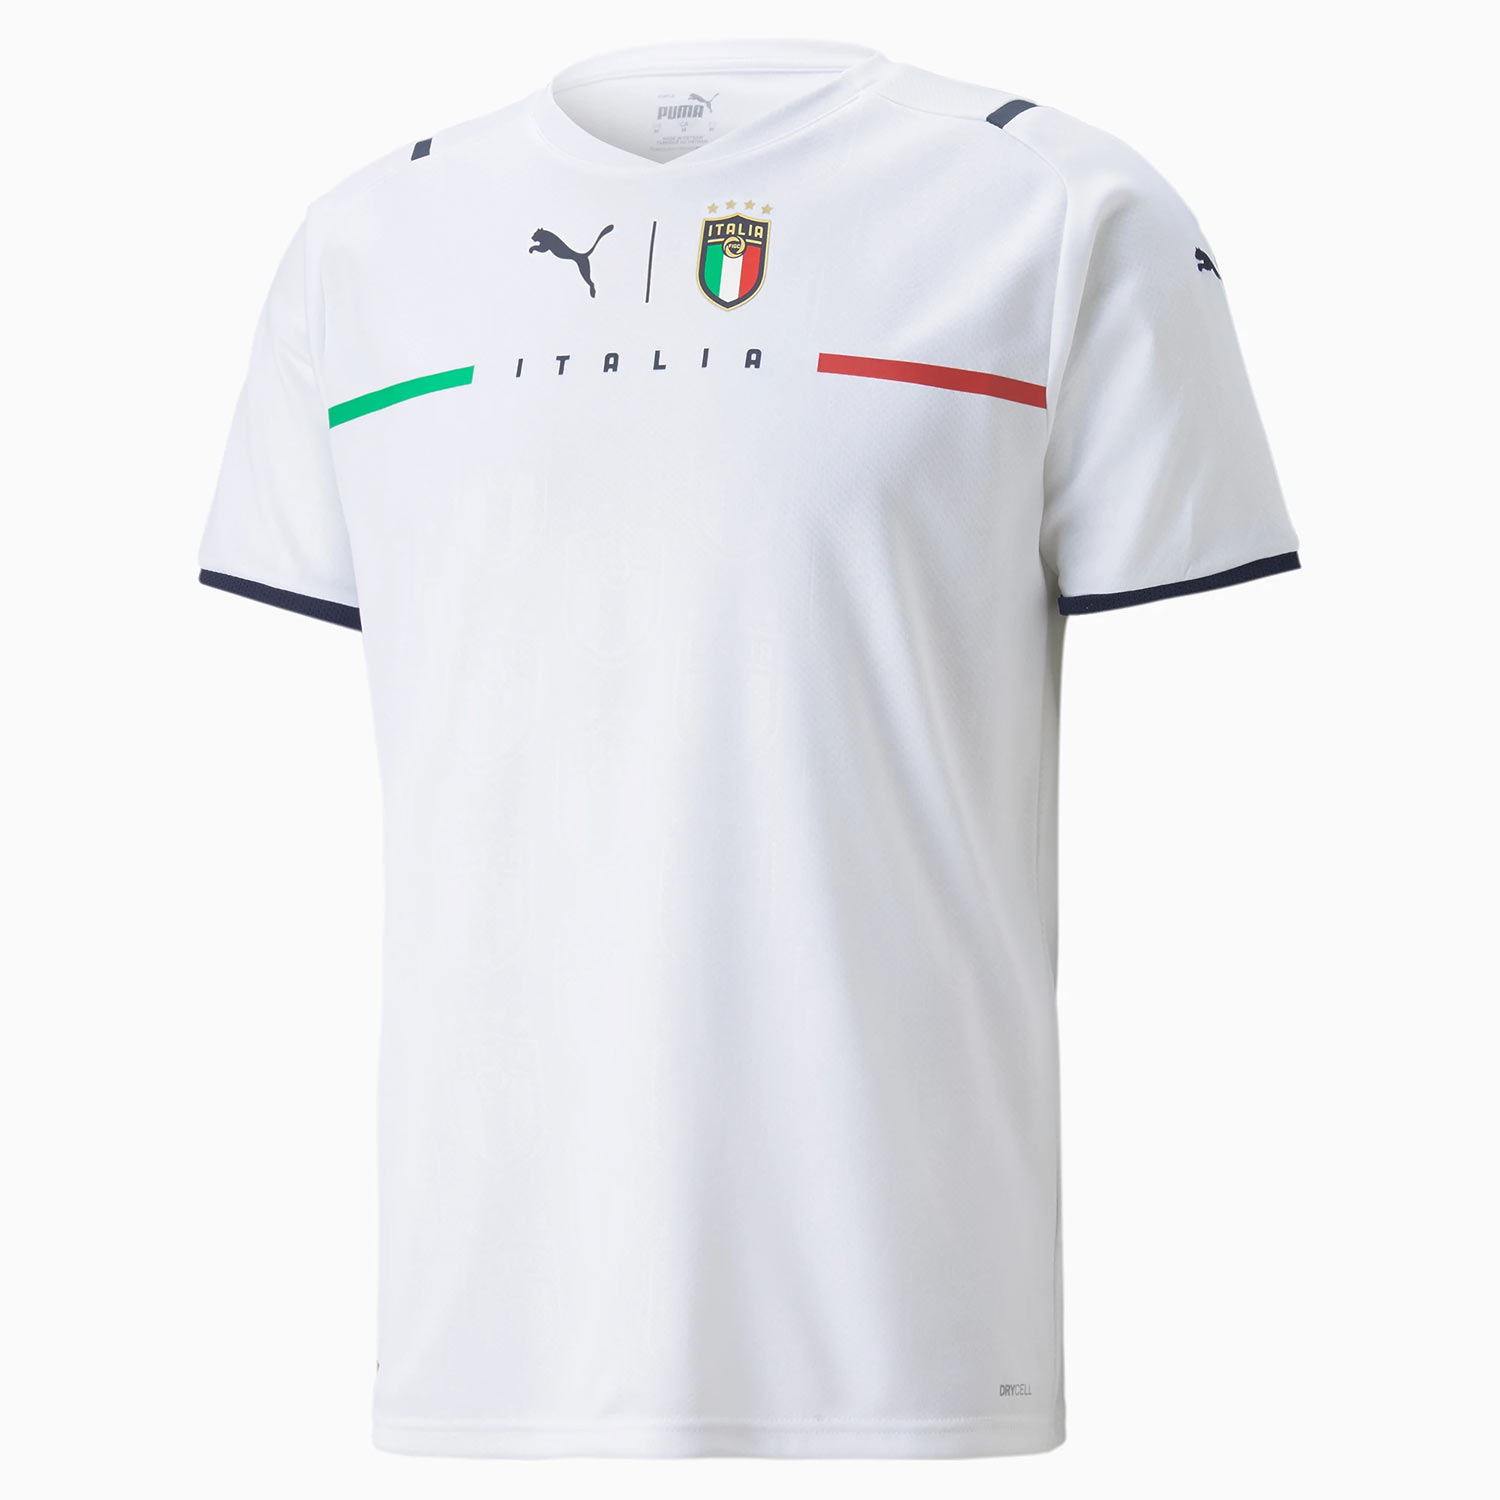 Seconda maglia Italia bianca 2021-2021, che novità da Puma!